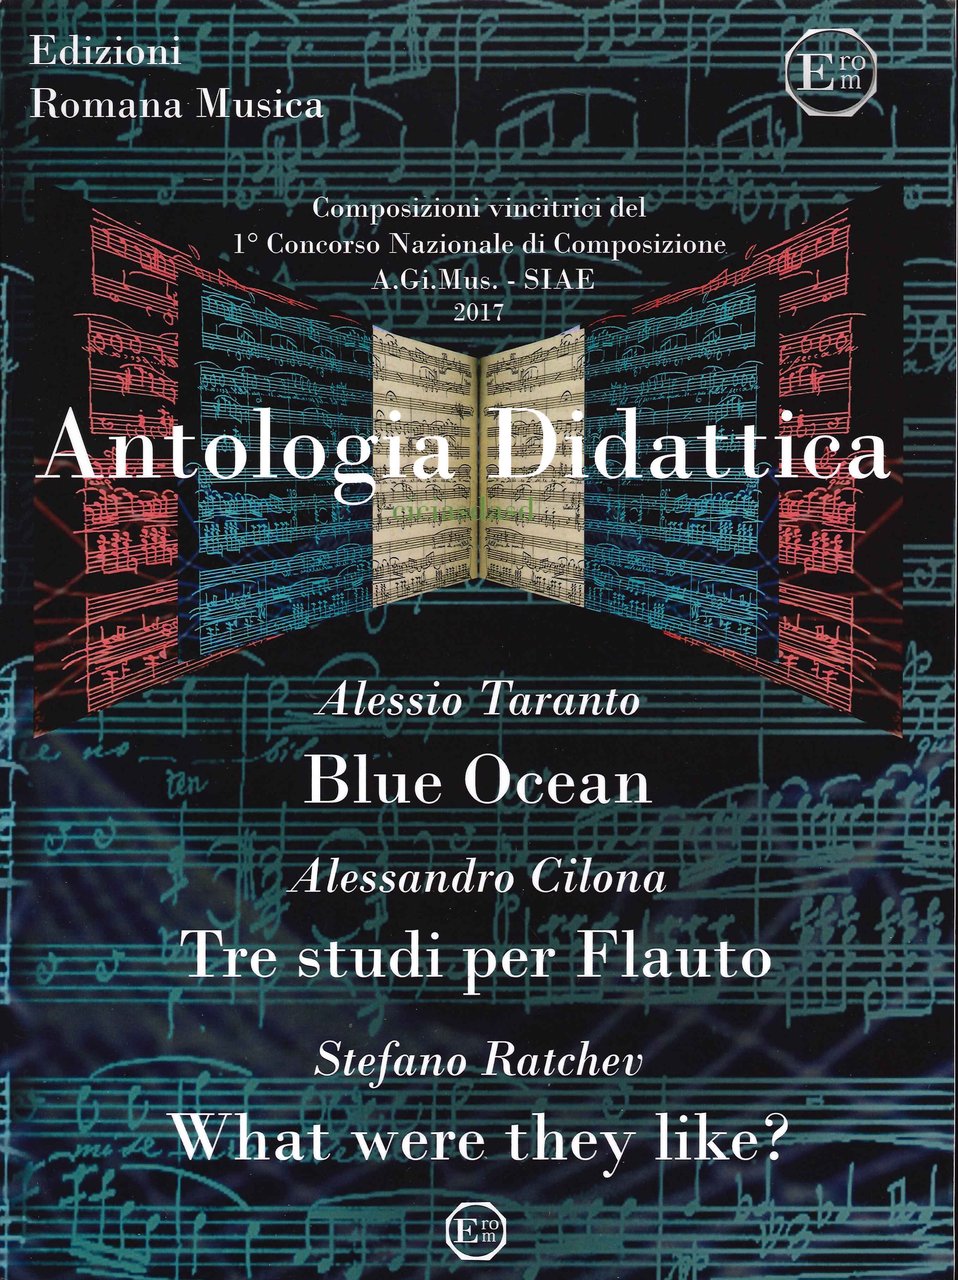 Antologia Didattica, Roma, EROM Edizioni Romana Musica, 2021